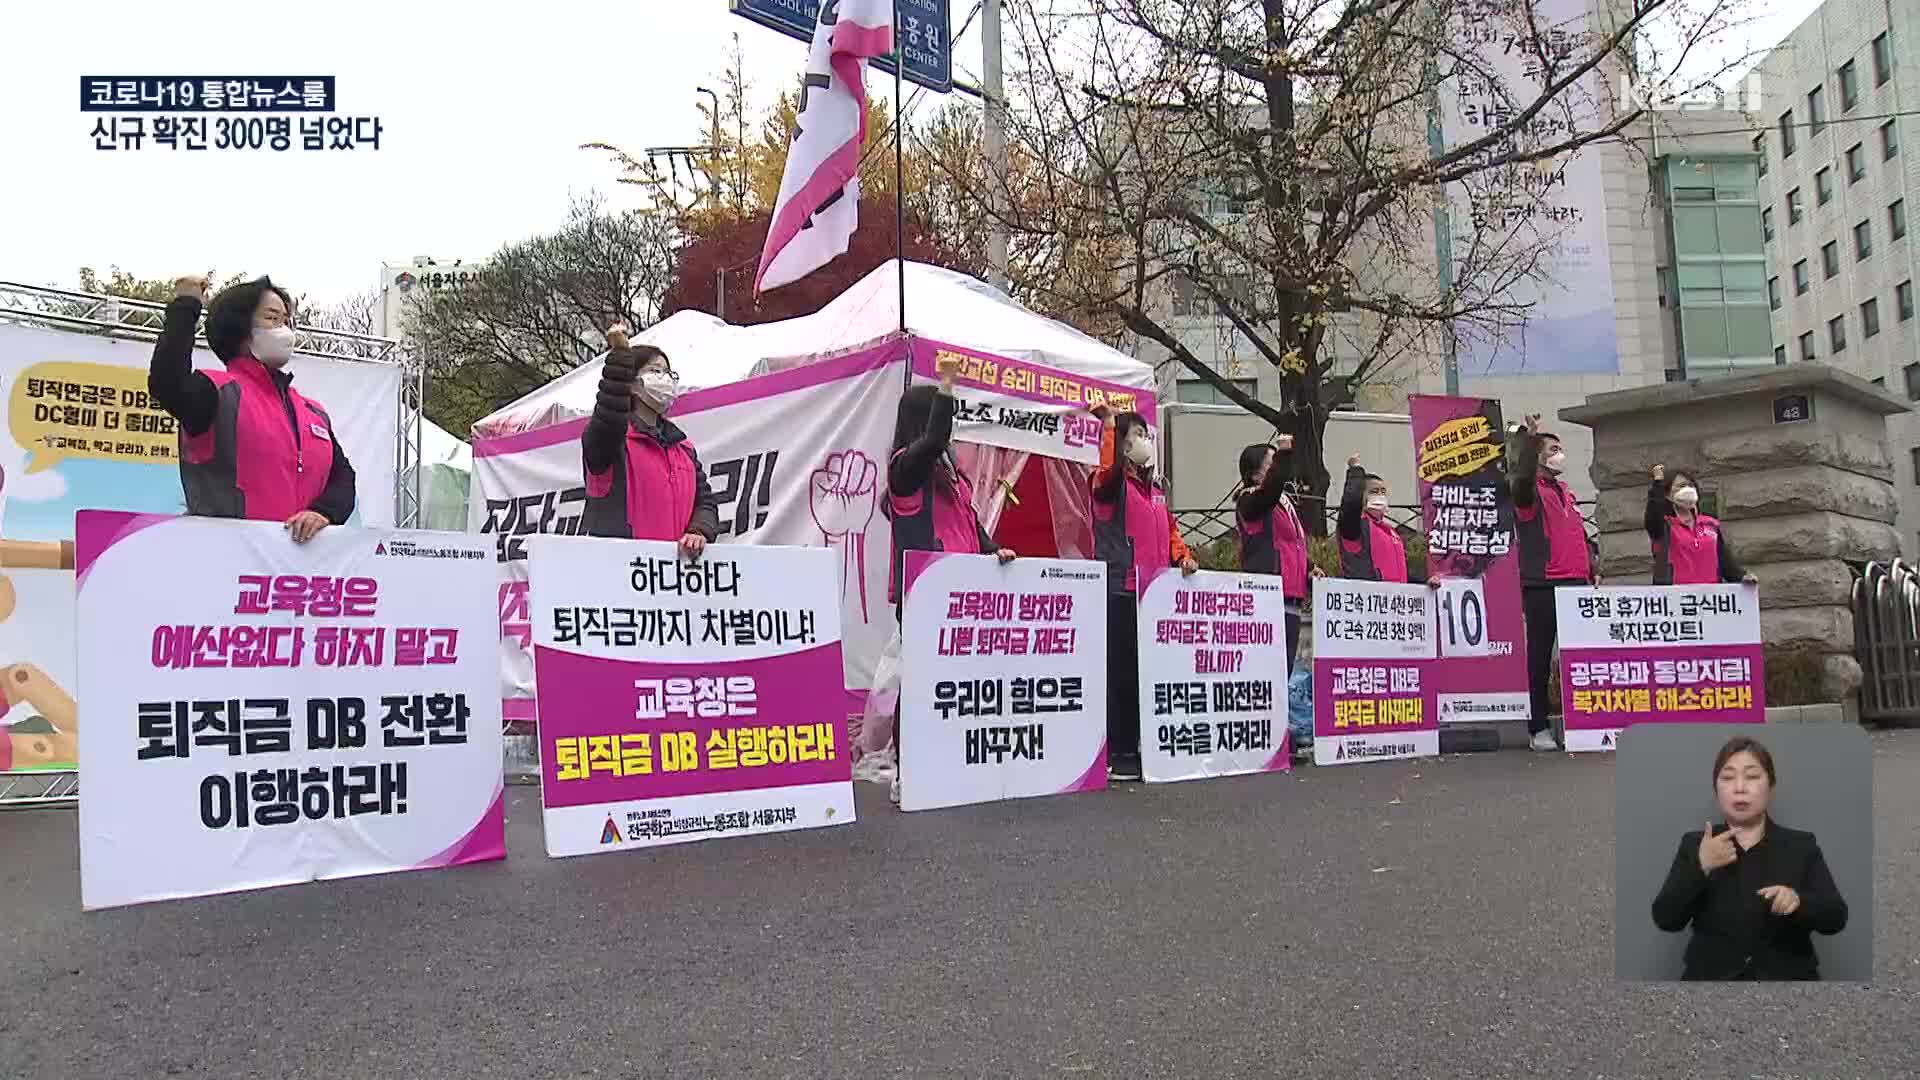 서울 학교 비정규직 노조 이틀간 총파업…퇴직연금제 개선 요구